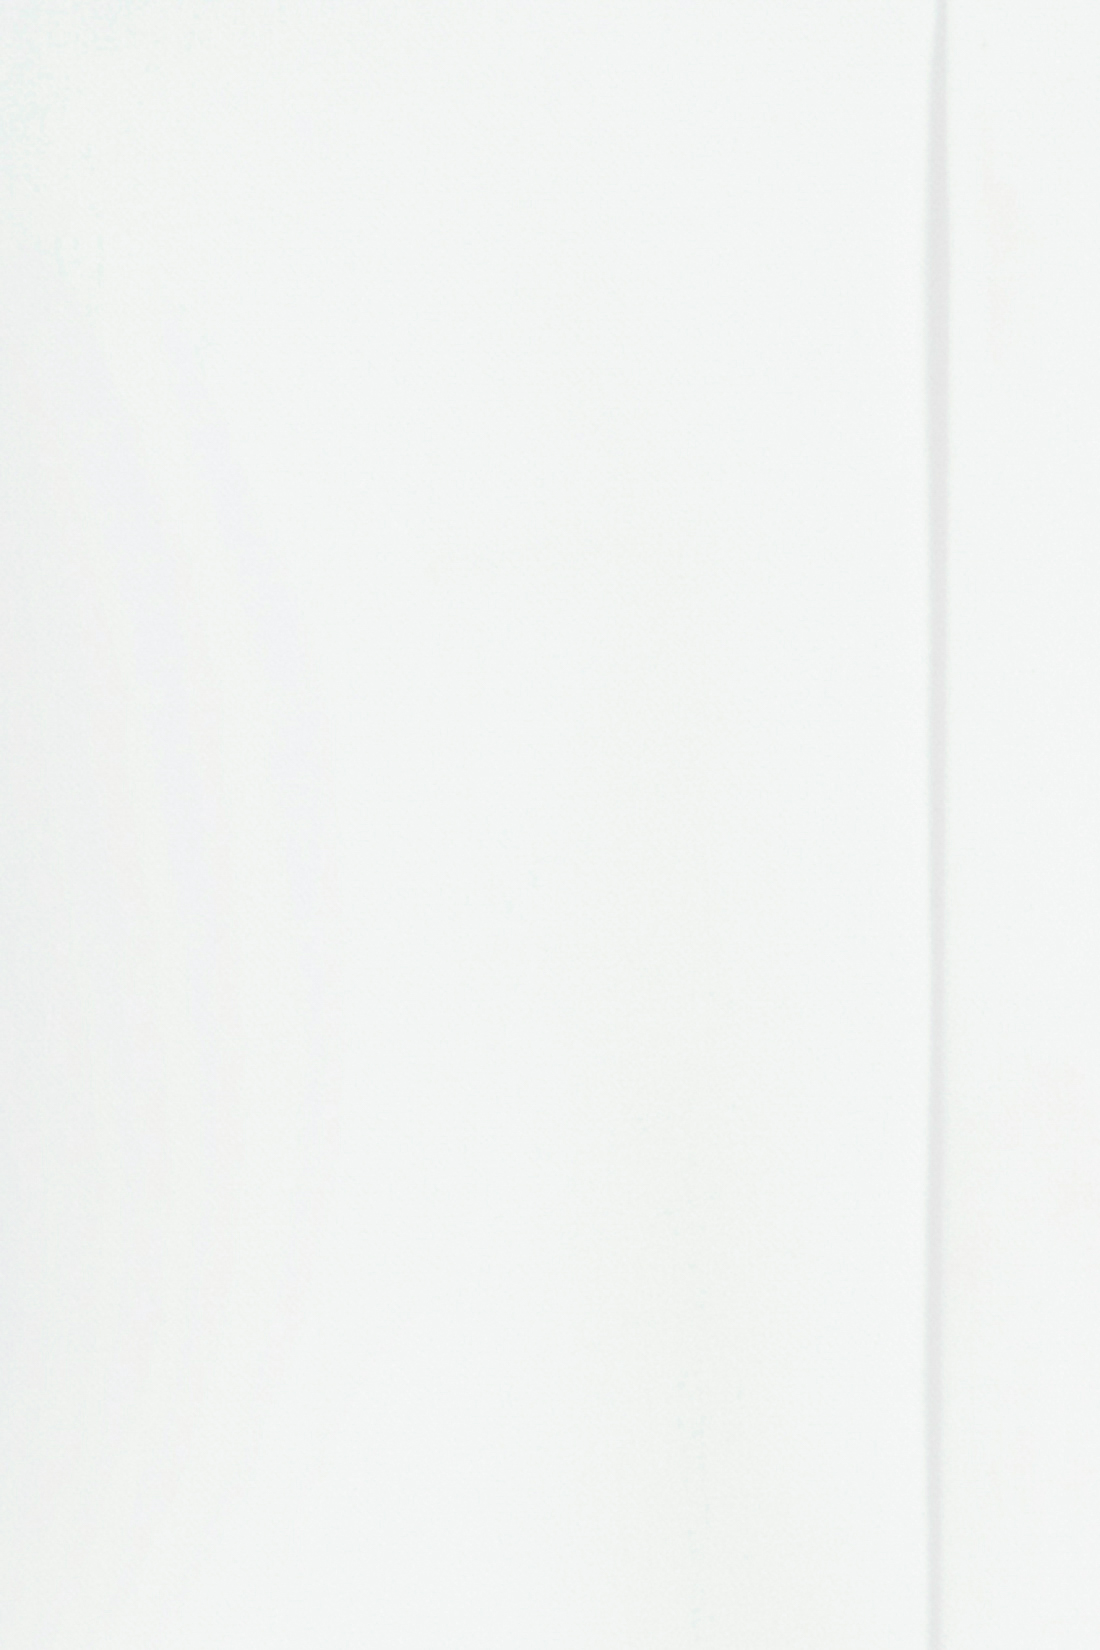 Юбка с драпировкой и поясом (арт. baon B477023), размер M, цвет белый Юбка с драпировкой и поясом (арт. baon B477023) - фото 3